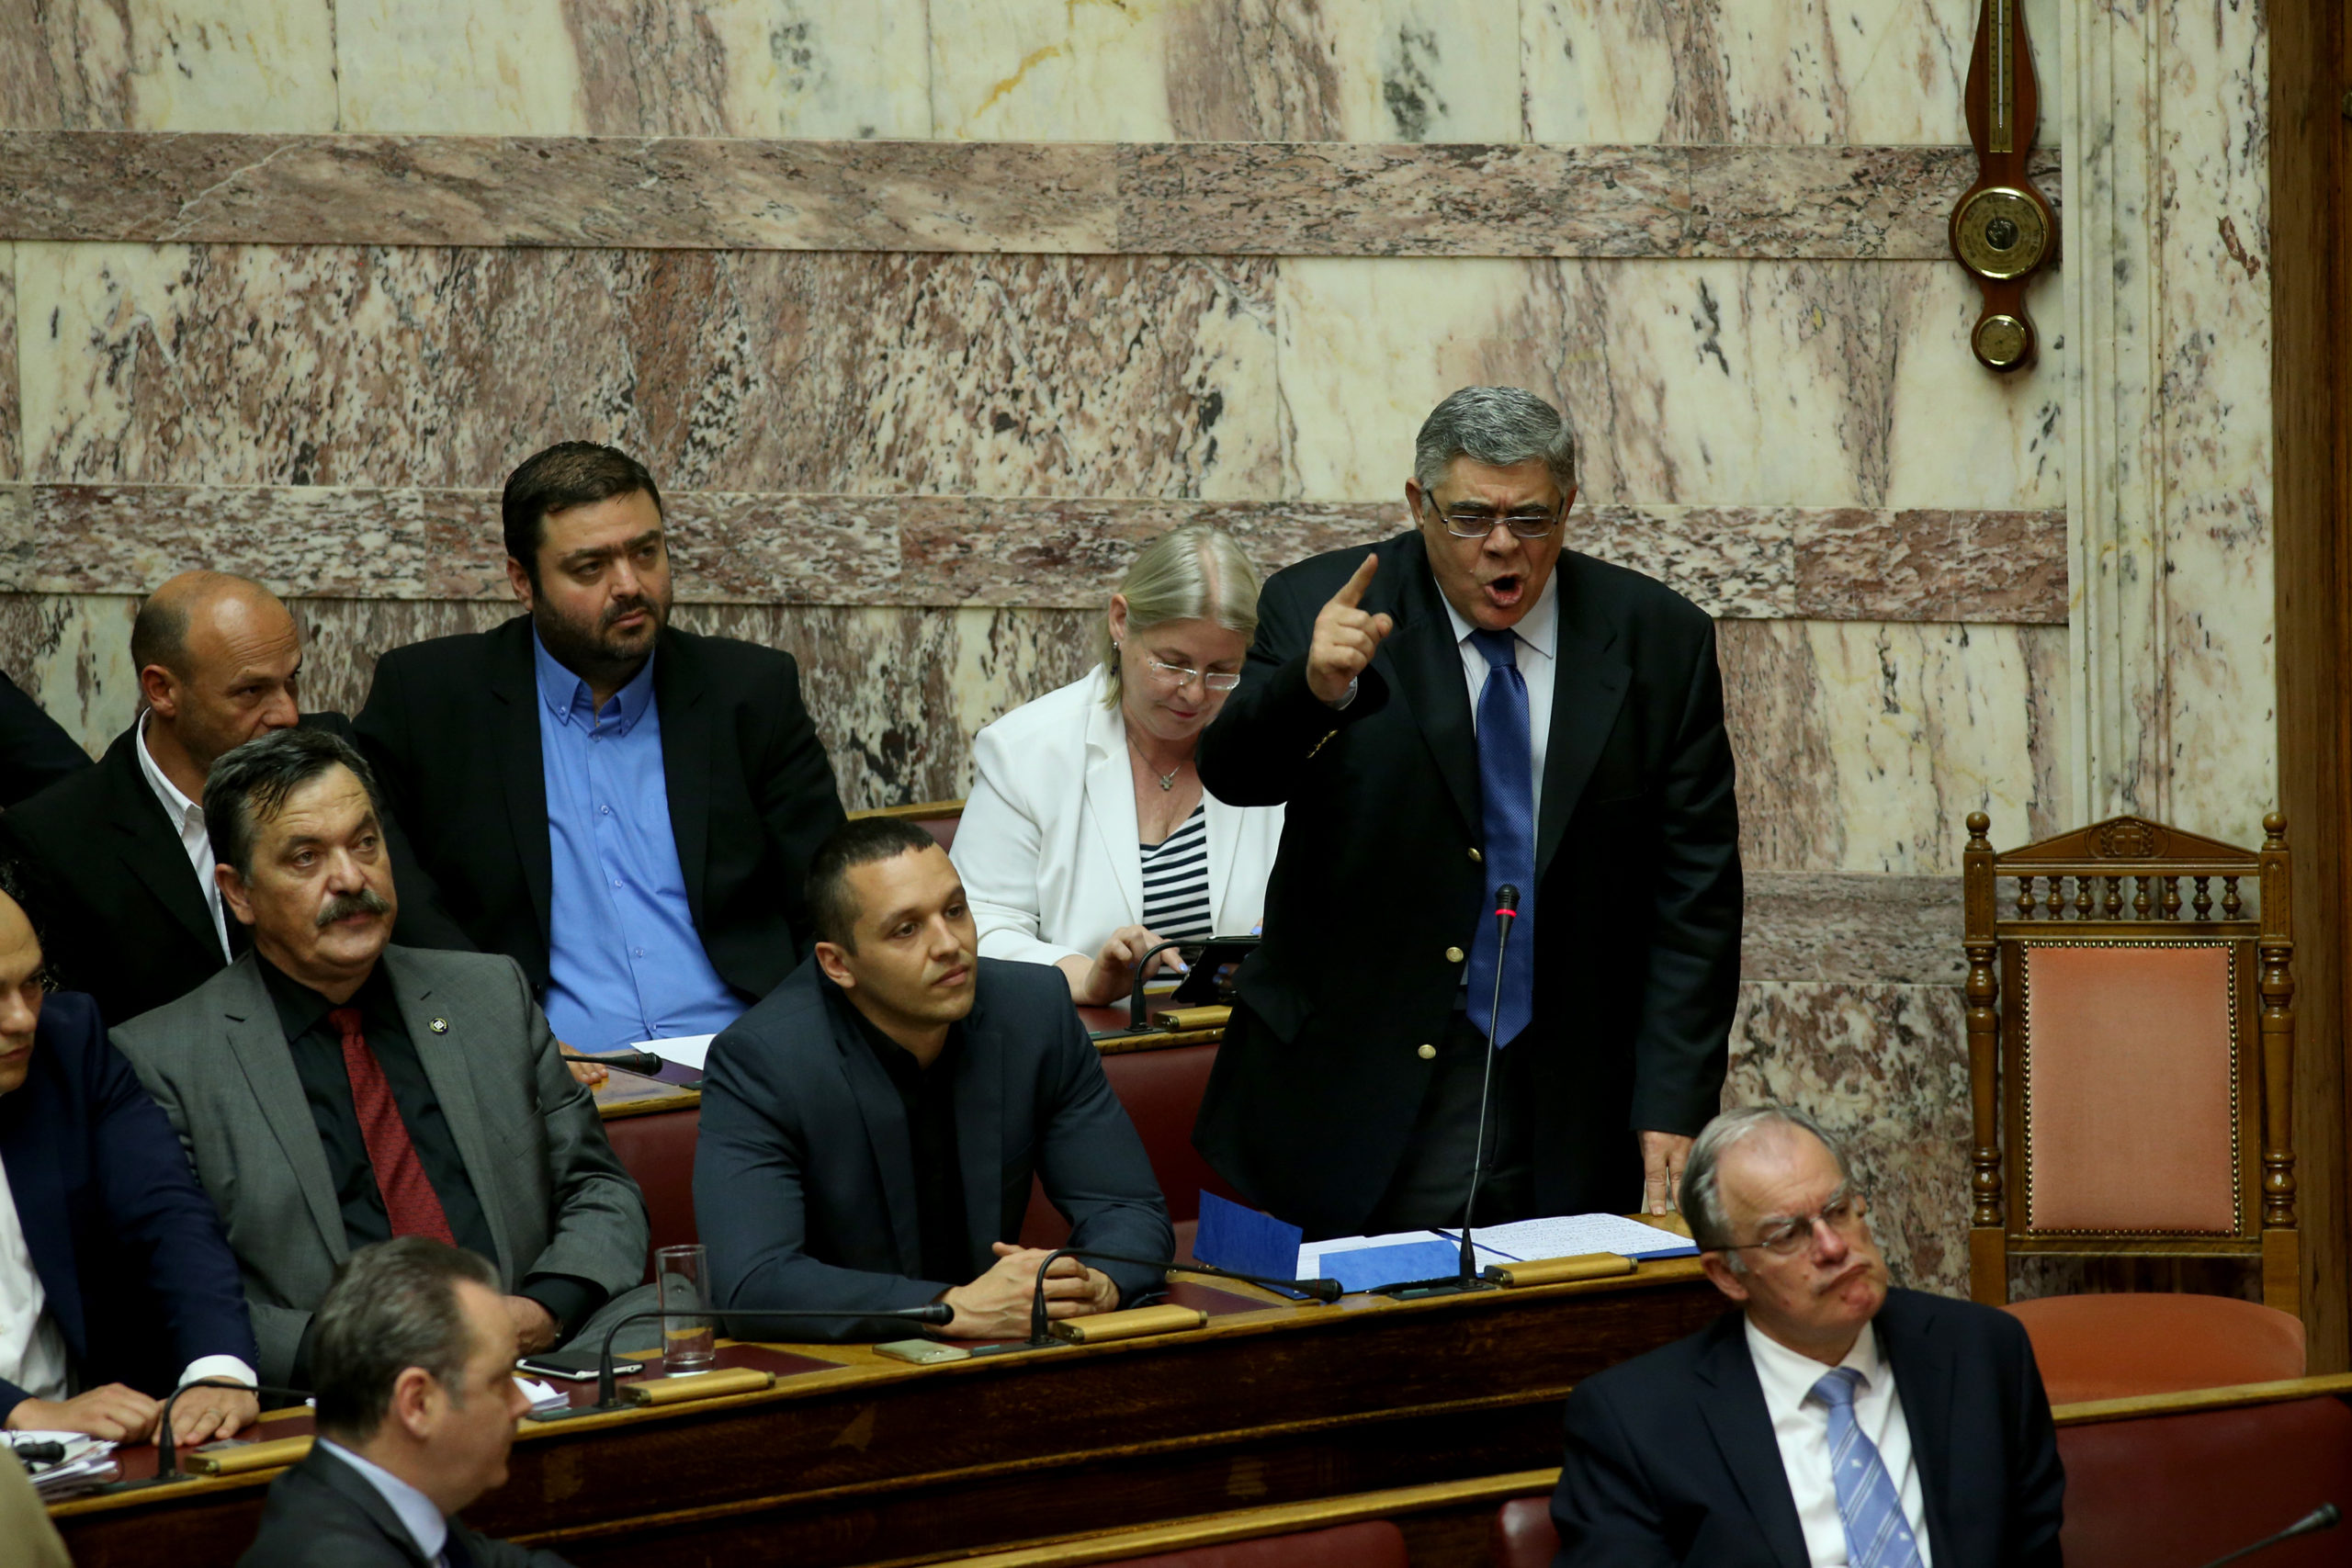 Μιχαλολιάκος: Οι Έλληνες Εθνικιστές θα αντισταθούν στην εθνοκτόνα πολιτική των Μνημονίων – ΒΙΝΤΕΟ